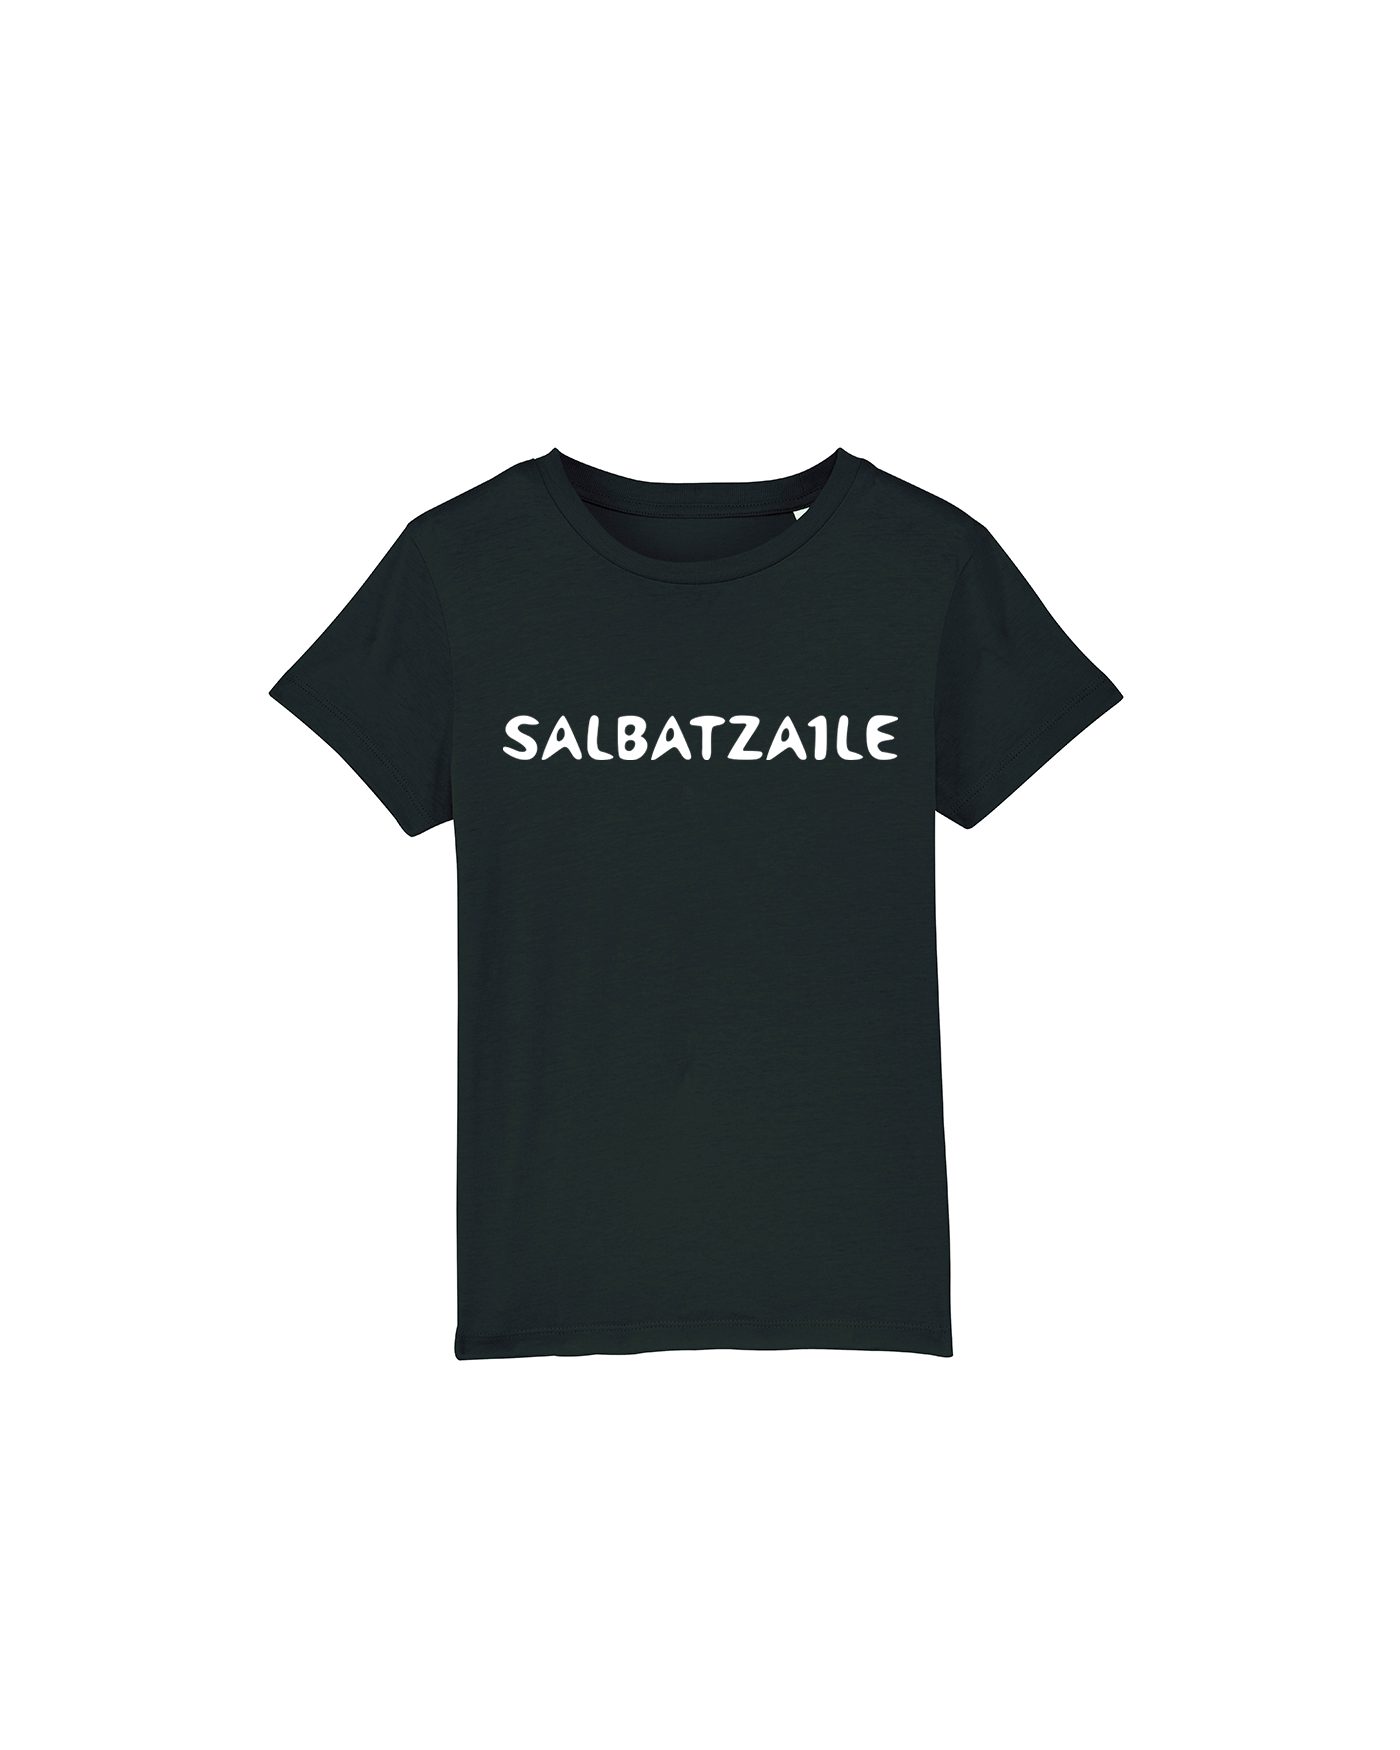 Salbatzaile Crew - Infantil